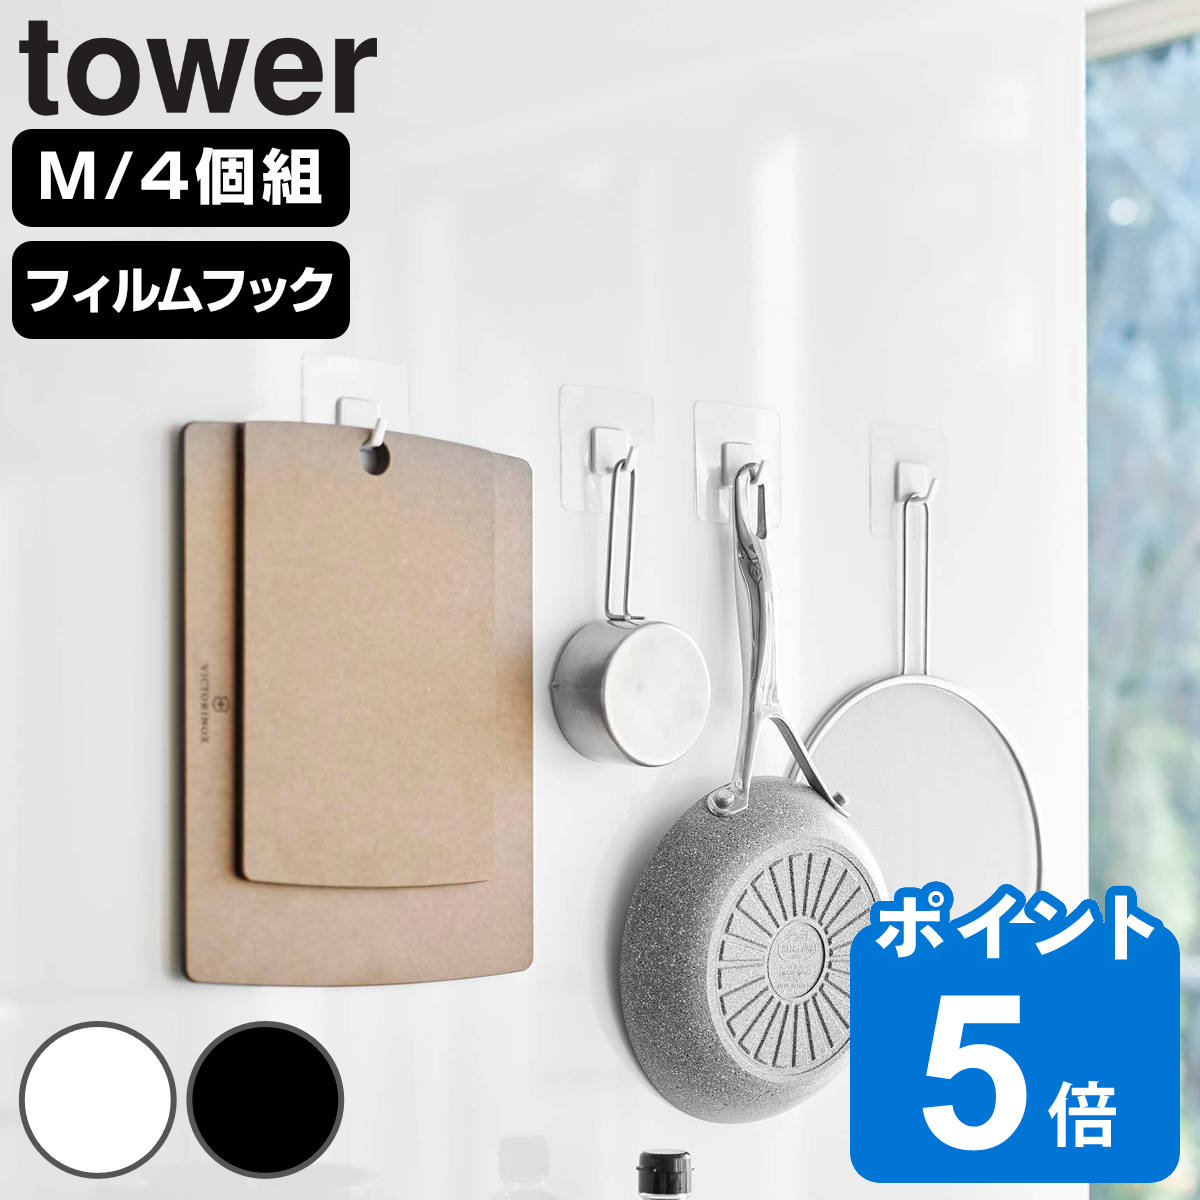 山崎実業 tower フィルムフック タワー M 4個組